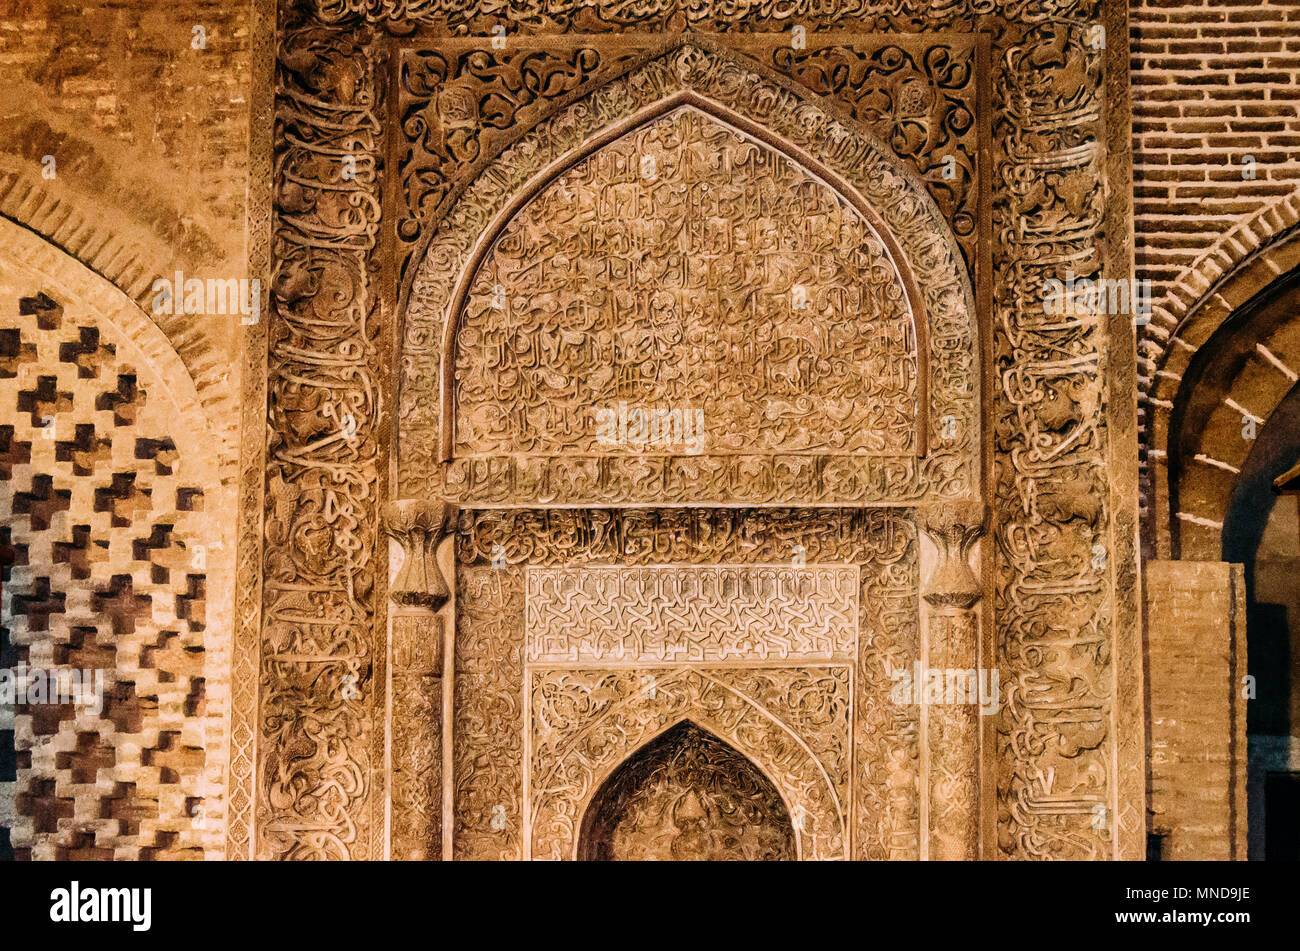 Arabo calligrafia coranica witten in Thuluth script sul lato di una parete, all'Imam moschea Foto Stock